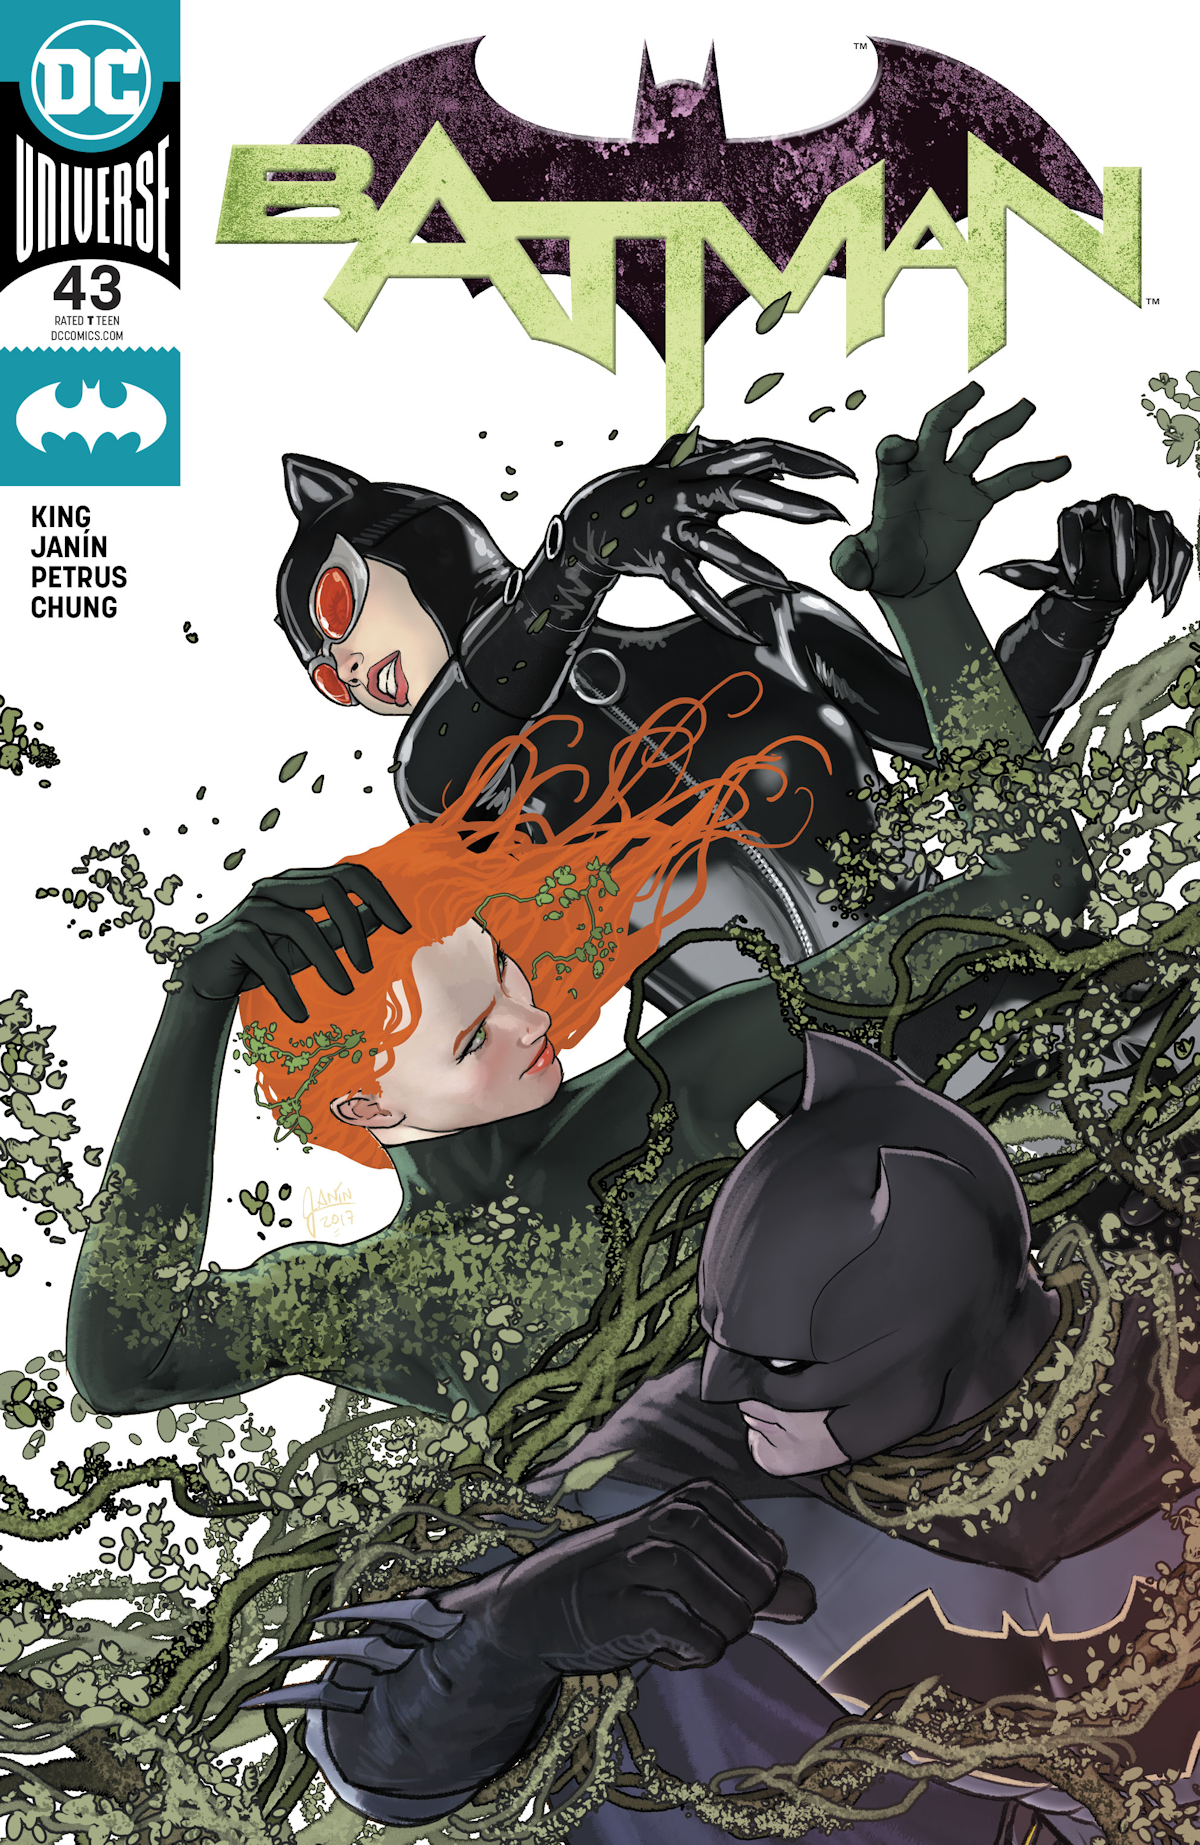 Batman Vol. 3 43 (Cover A)